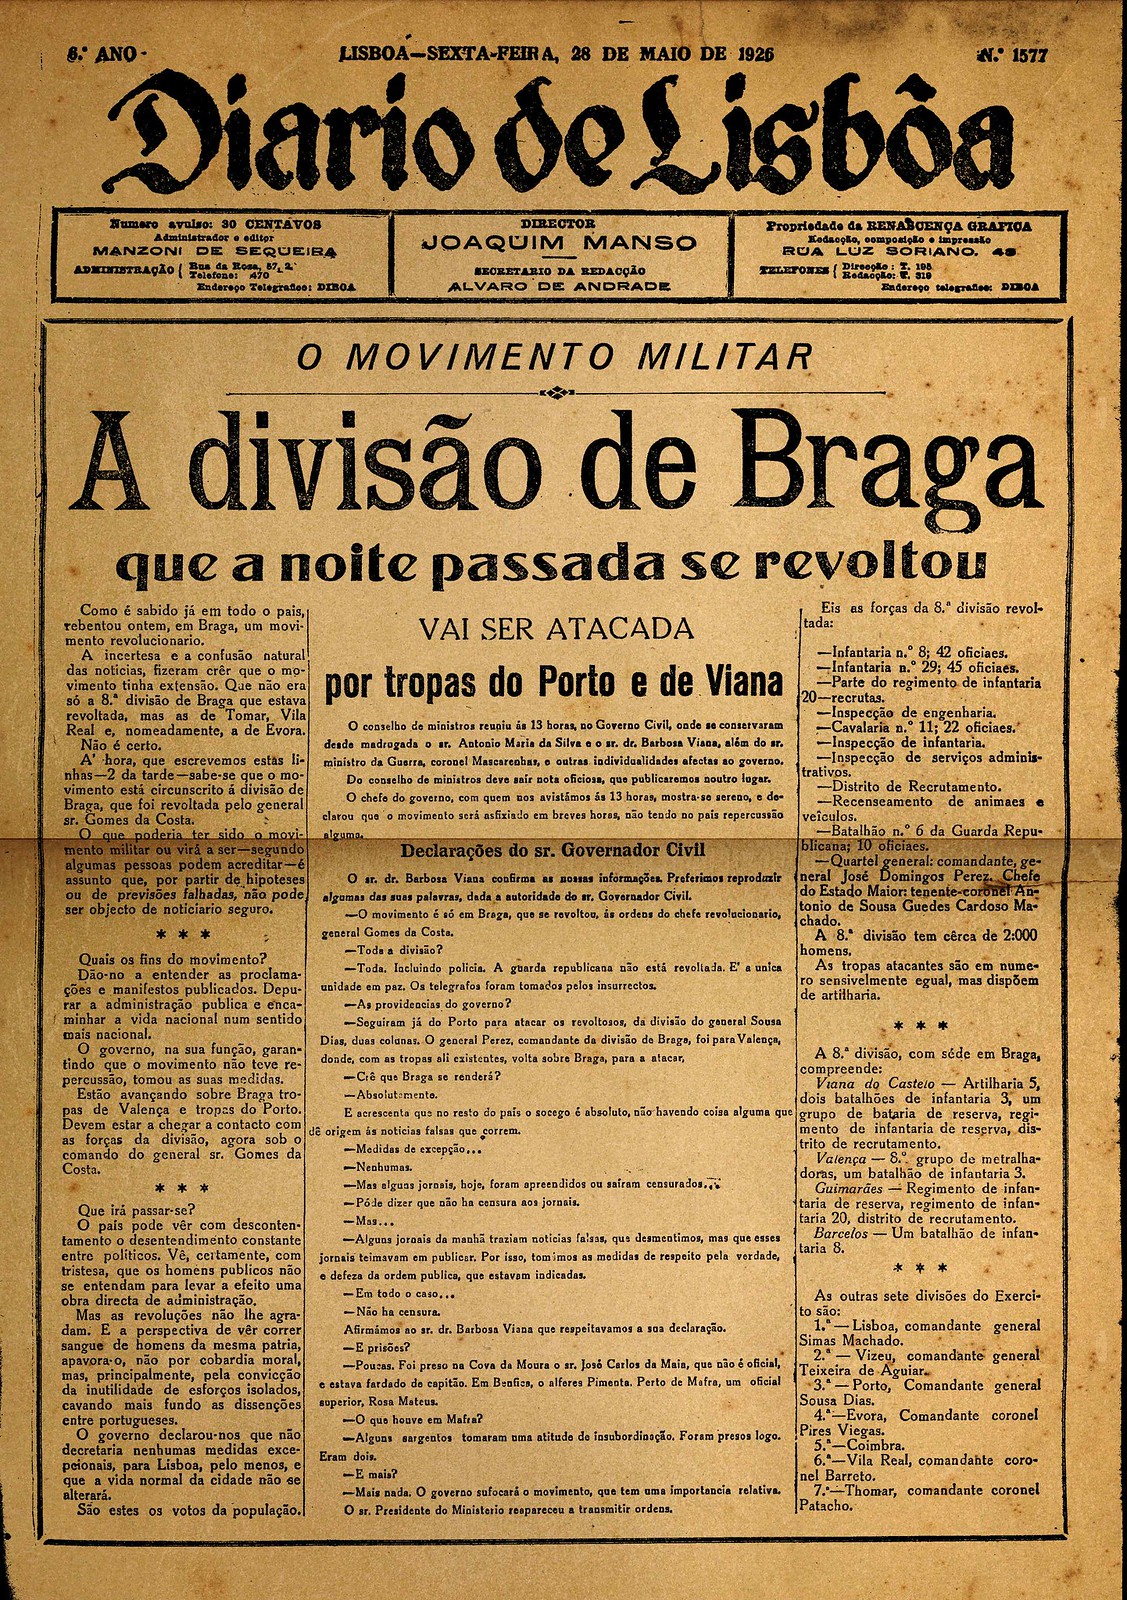 «A divisão de Braga que a noite passada se revoltou vais ser atacada por tropas do Porto e de Viana», in «Diario de Lisbôa», 28-5-926, p. 1